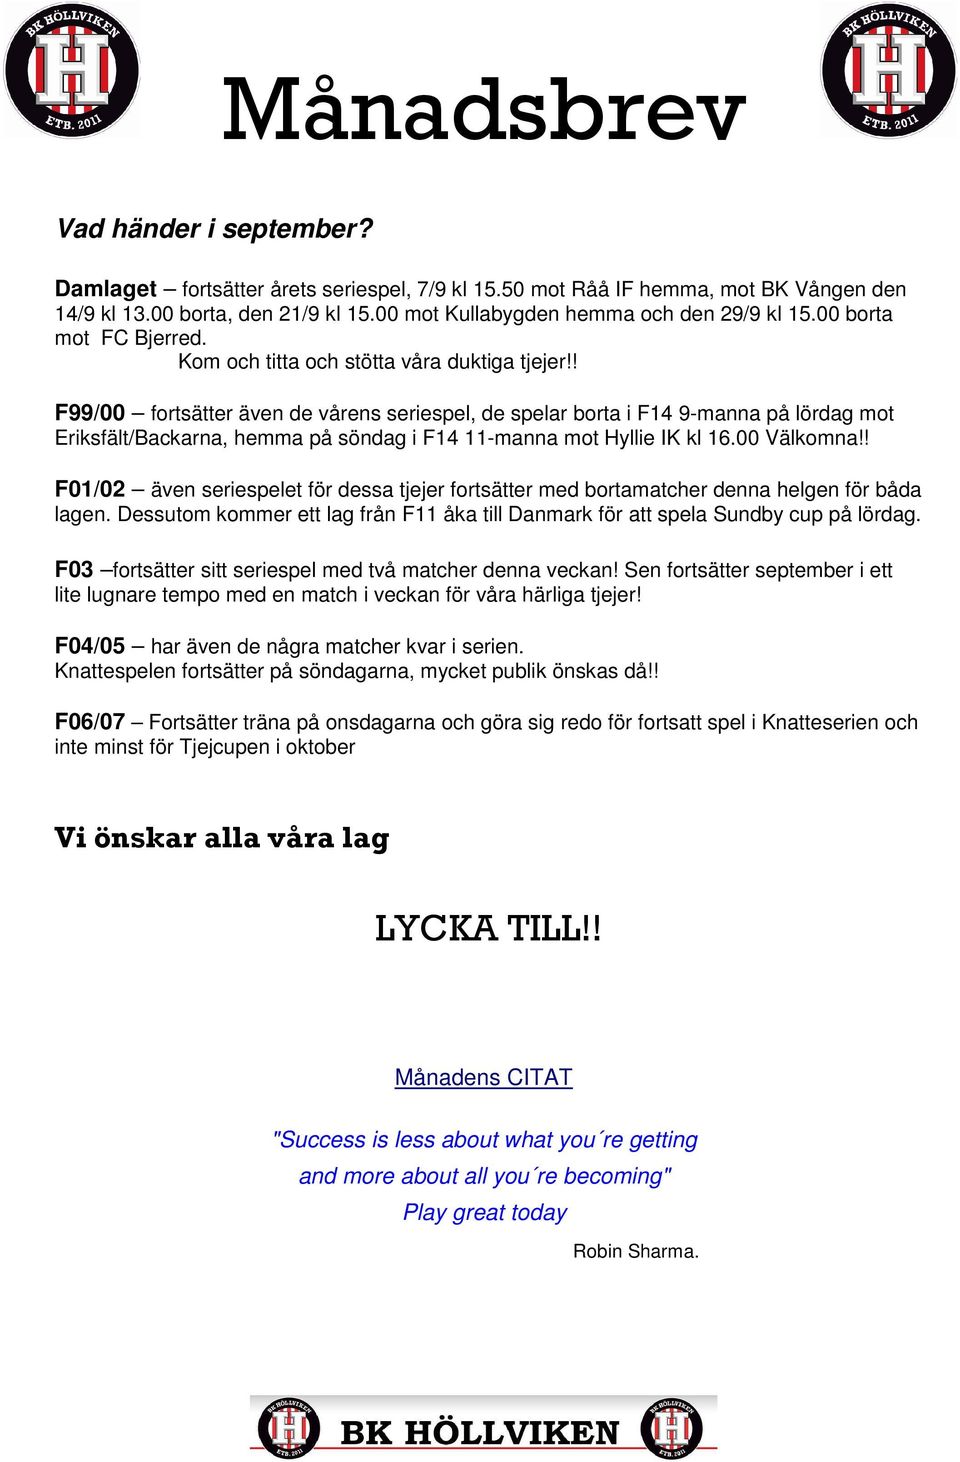 ! F99/00 fortsätter även de vårens seriespel, de spelar borta i F14 9-manna på lördag mot Eriksfält/Backarna, hemma på söndag i F14 11-manna mot Hyllie IK kl 16.00 Välkomna!